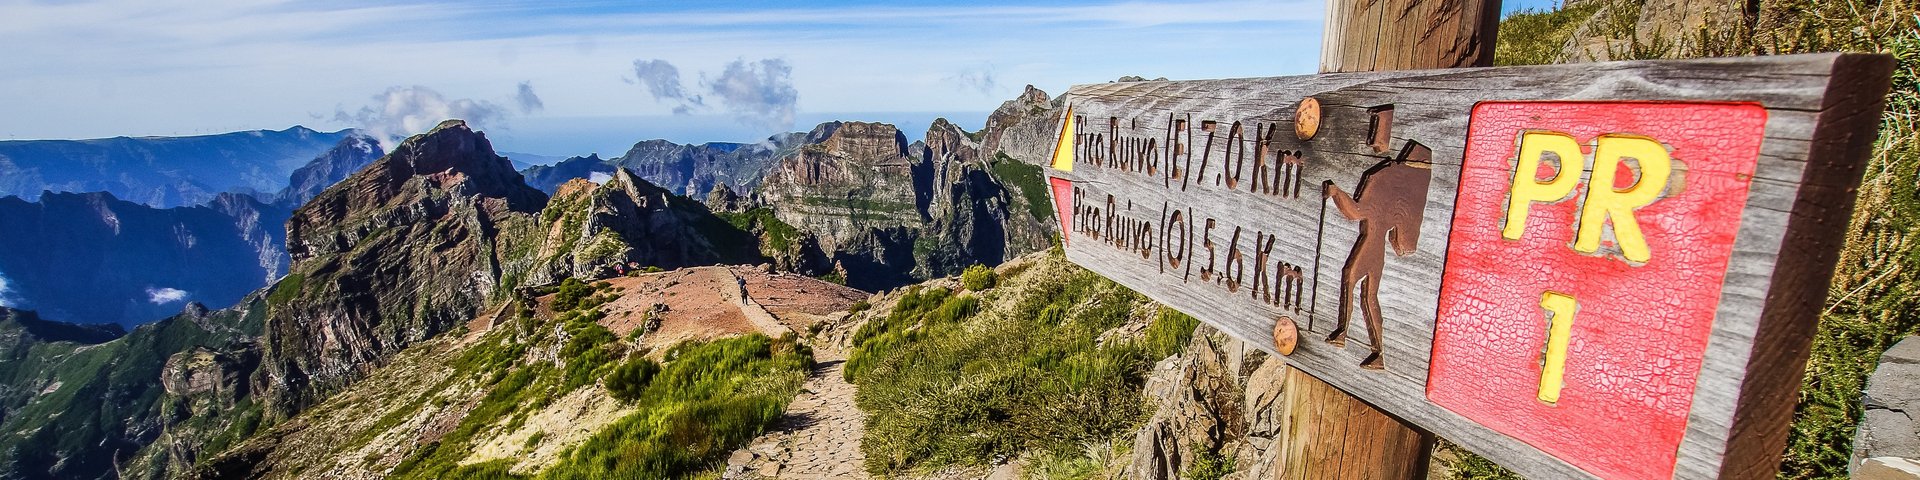 Wanderweg und Wegweiser zum Pico Ruivo auf der Insel Madeira